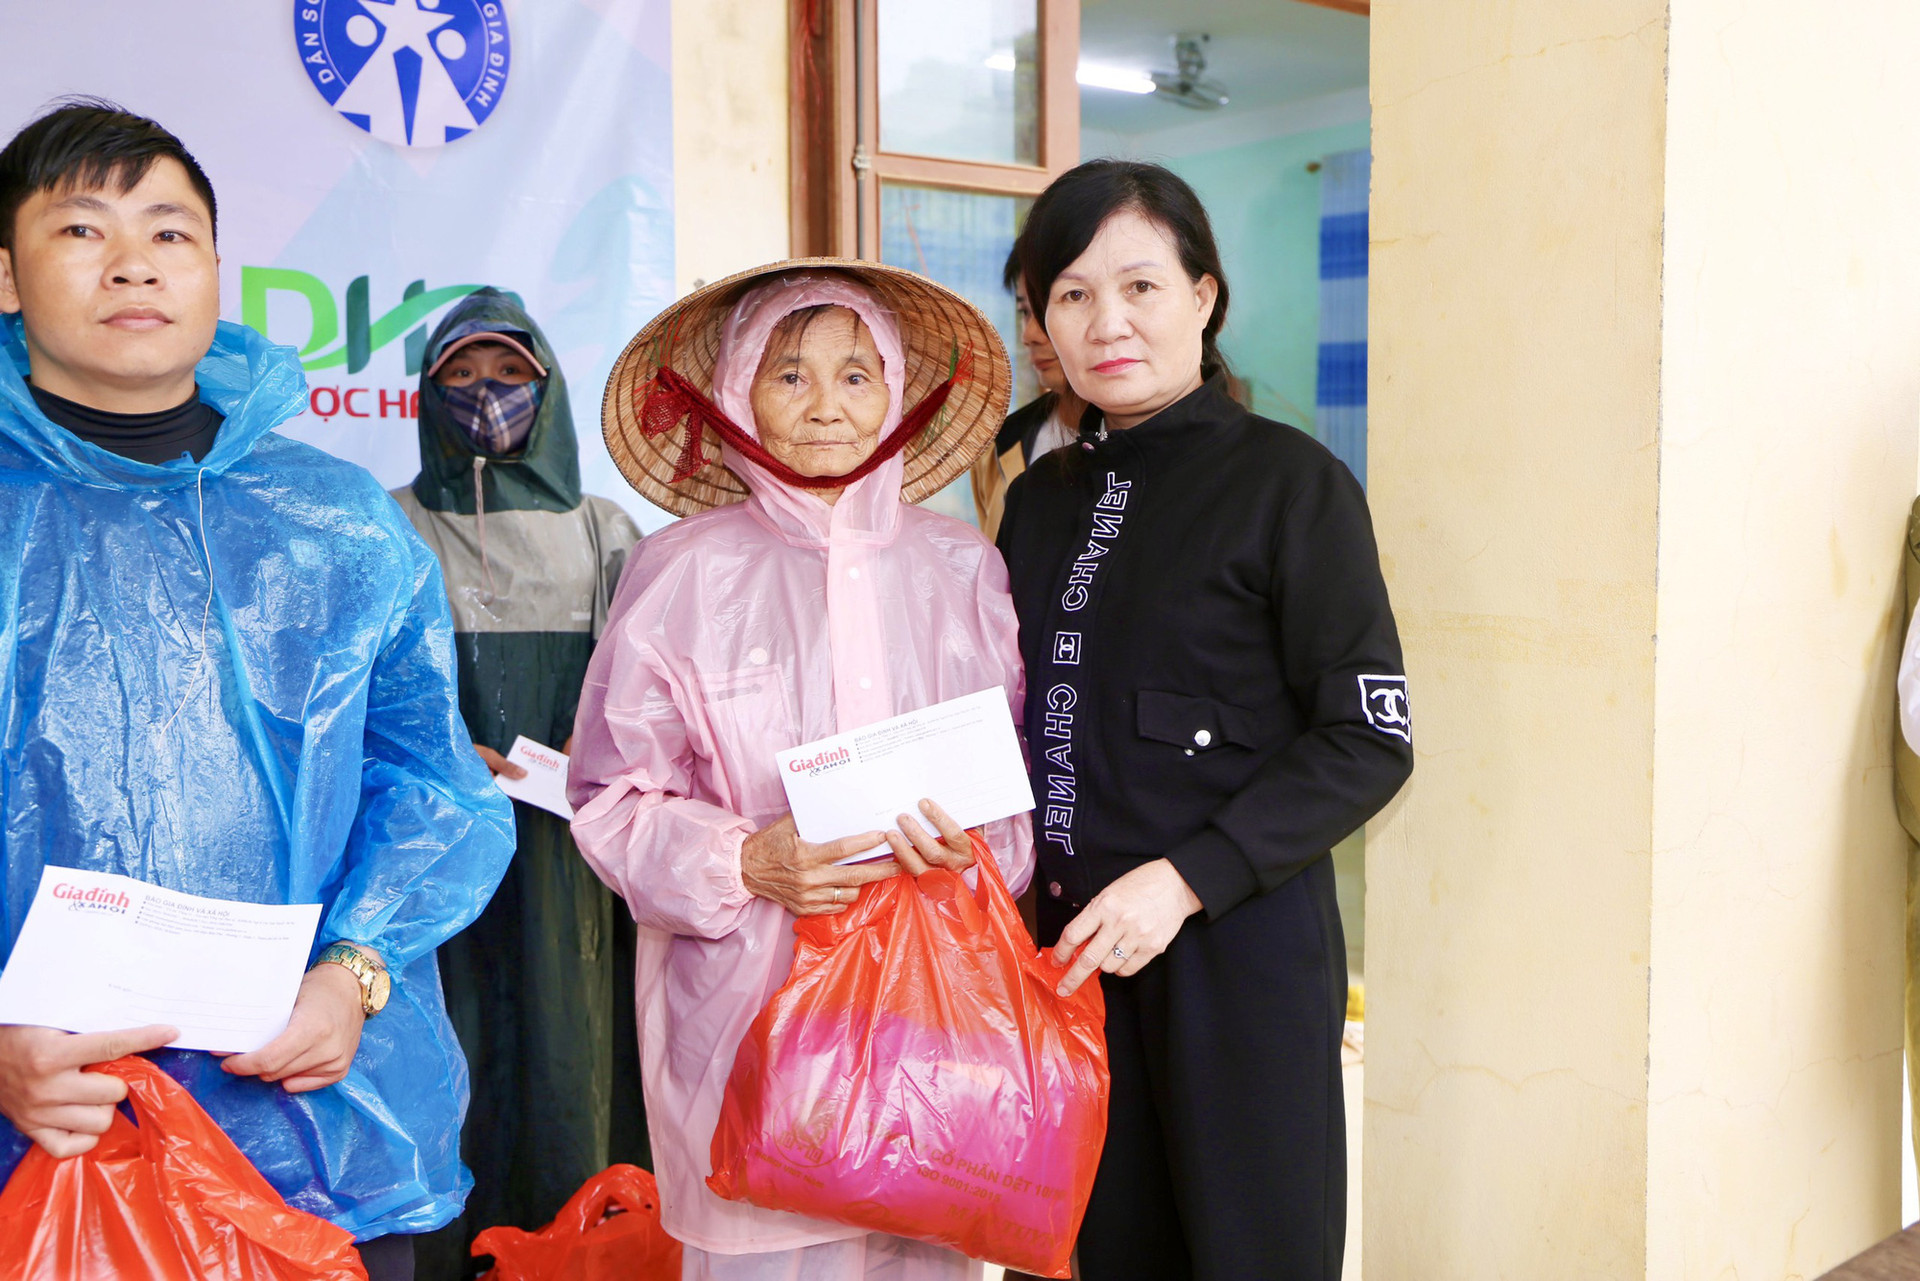 Báo Gia đình và Xã hội trao quà hỗ trợ đến người dân xã Tân Hóa, tỉnh Quảng Bình - Ảnh 9.